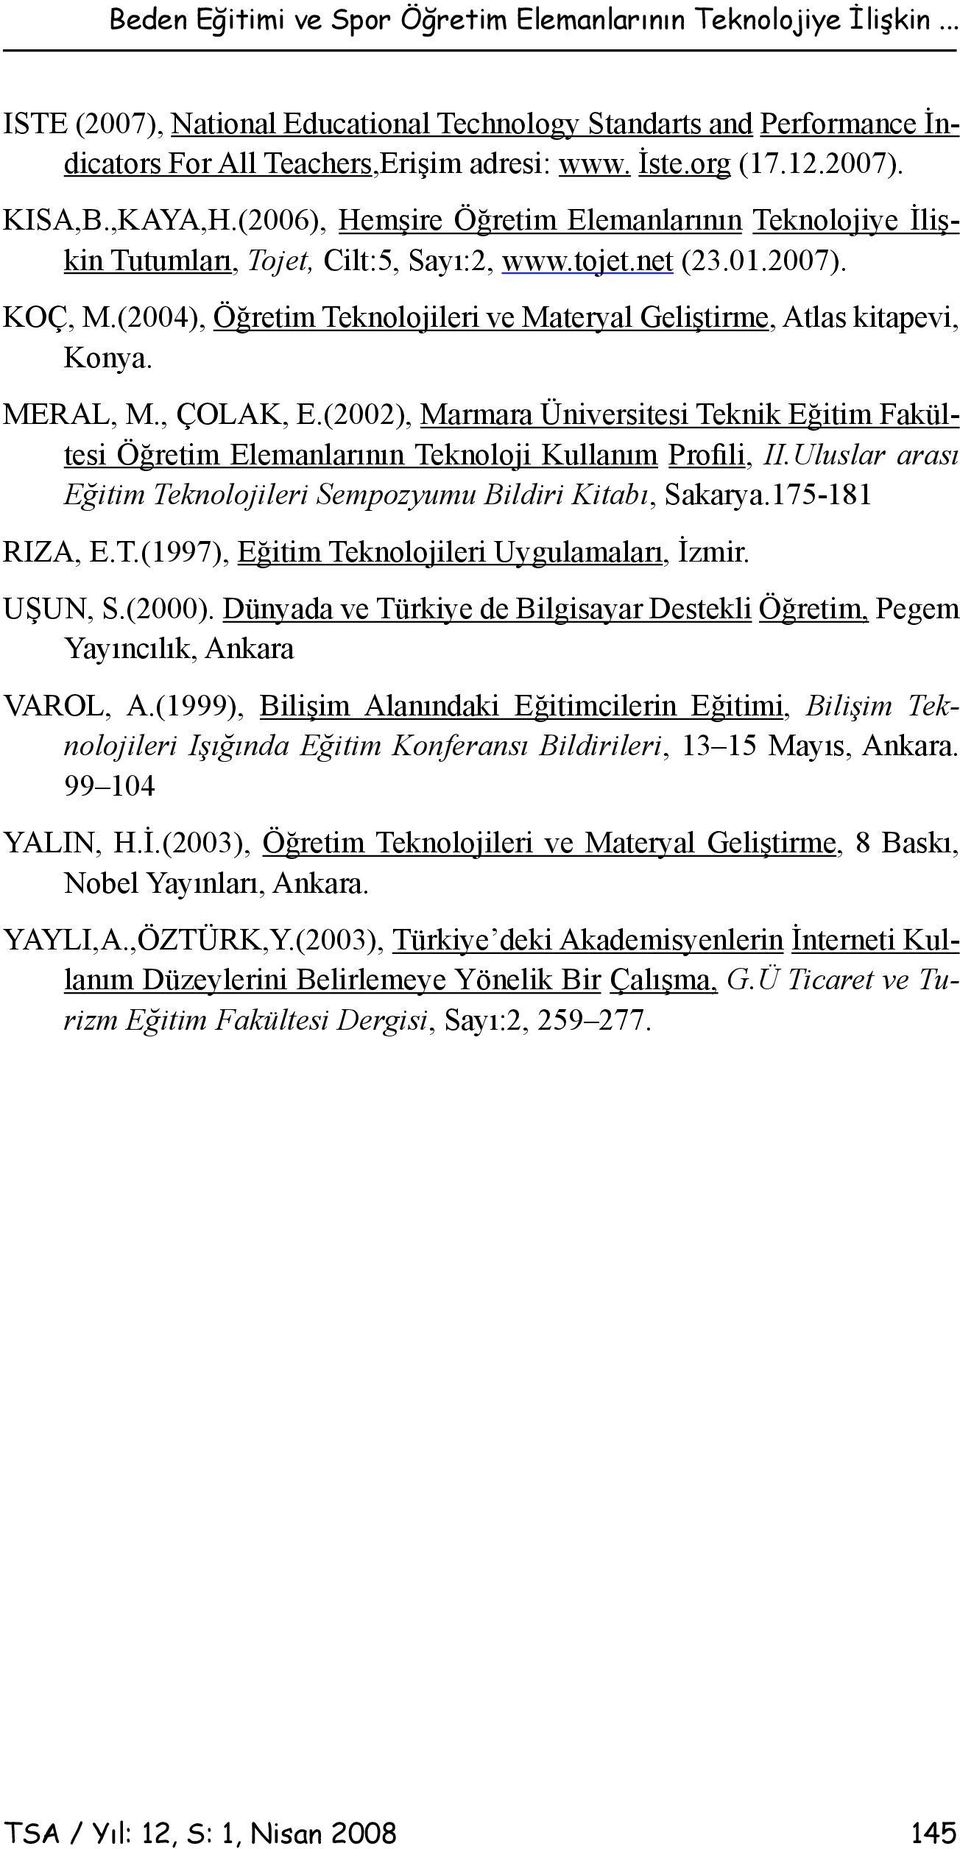 (2004), Öğretim Teknolojileri ve Materyal Geliştirme, Atlas kitapevi, Konya. MERAL, M., ÇOLAK, E.